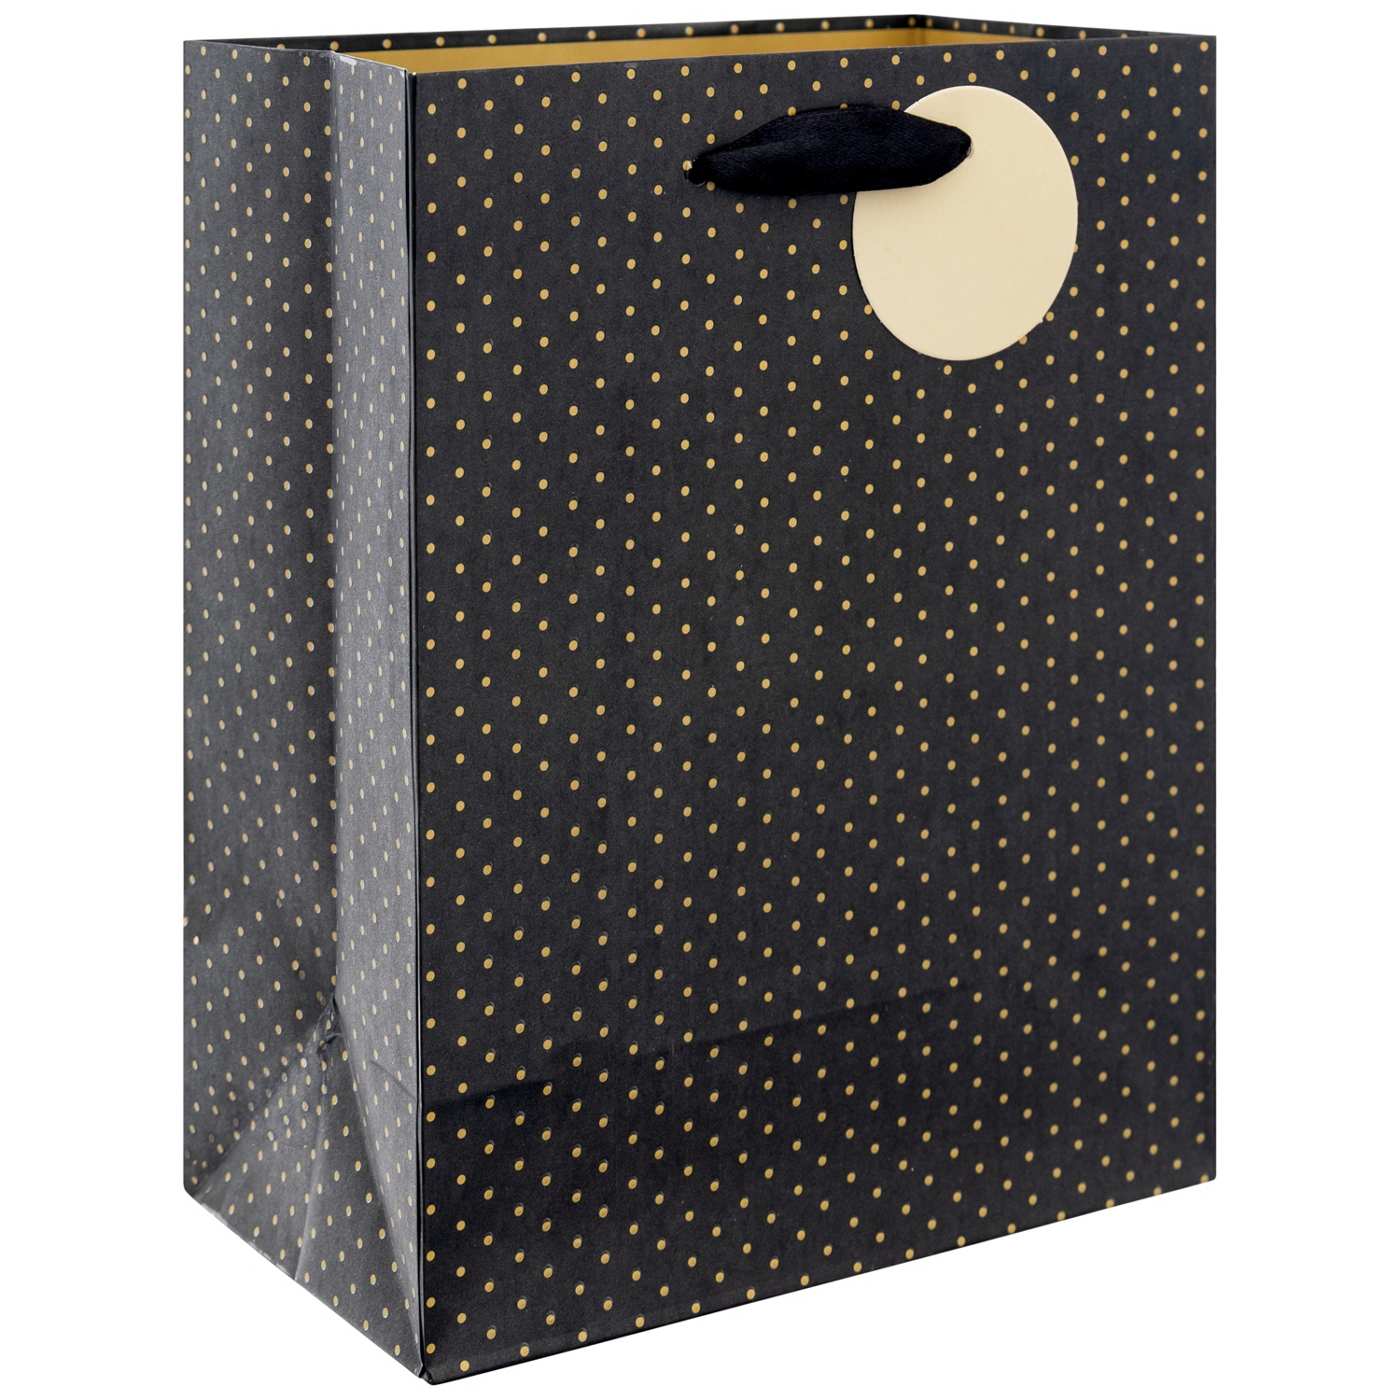 IG Design Gold Dots Black Paper Gift Bag; image 2 of 2